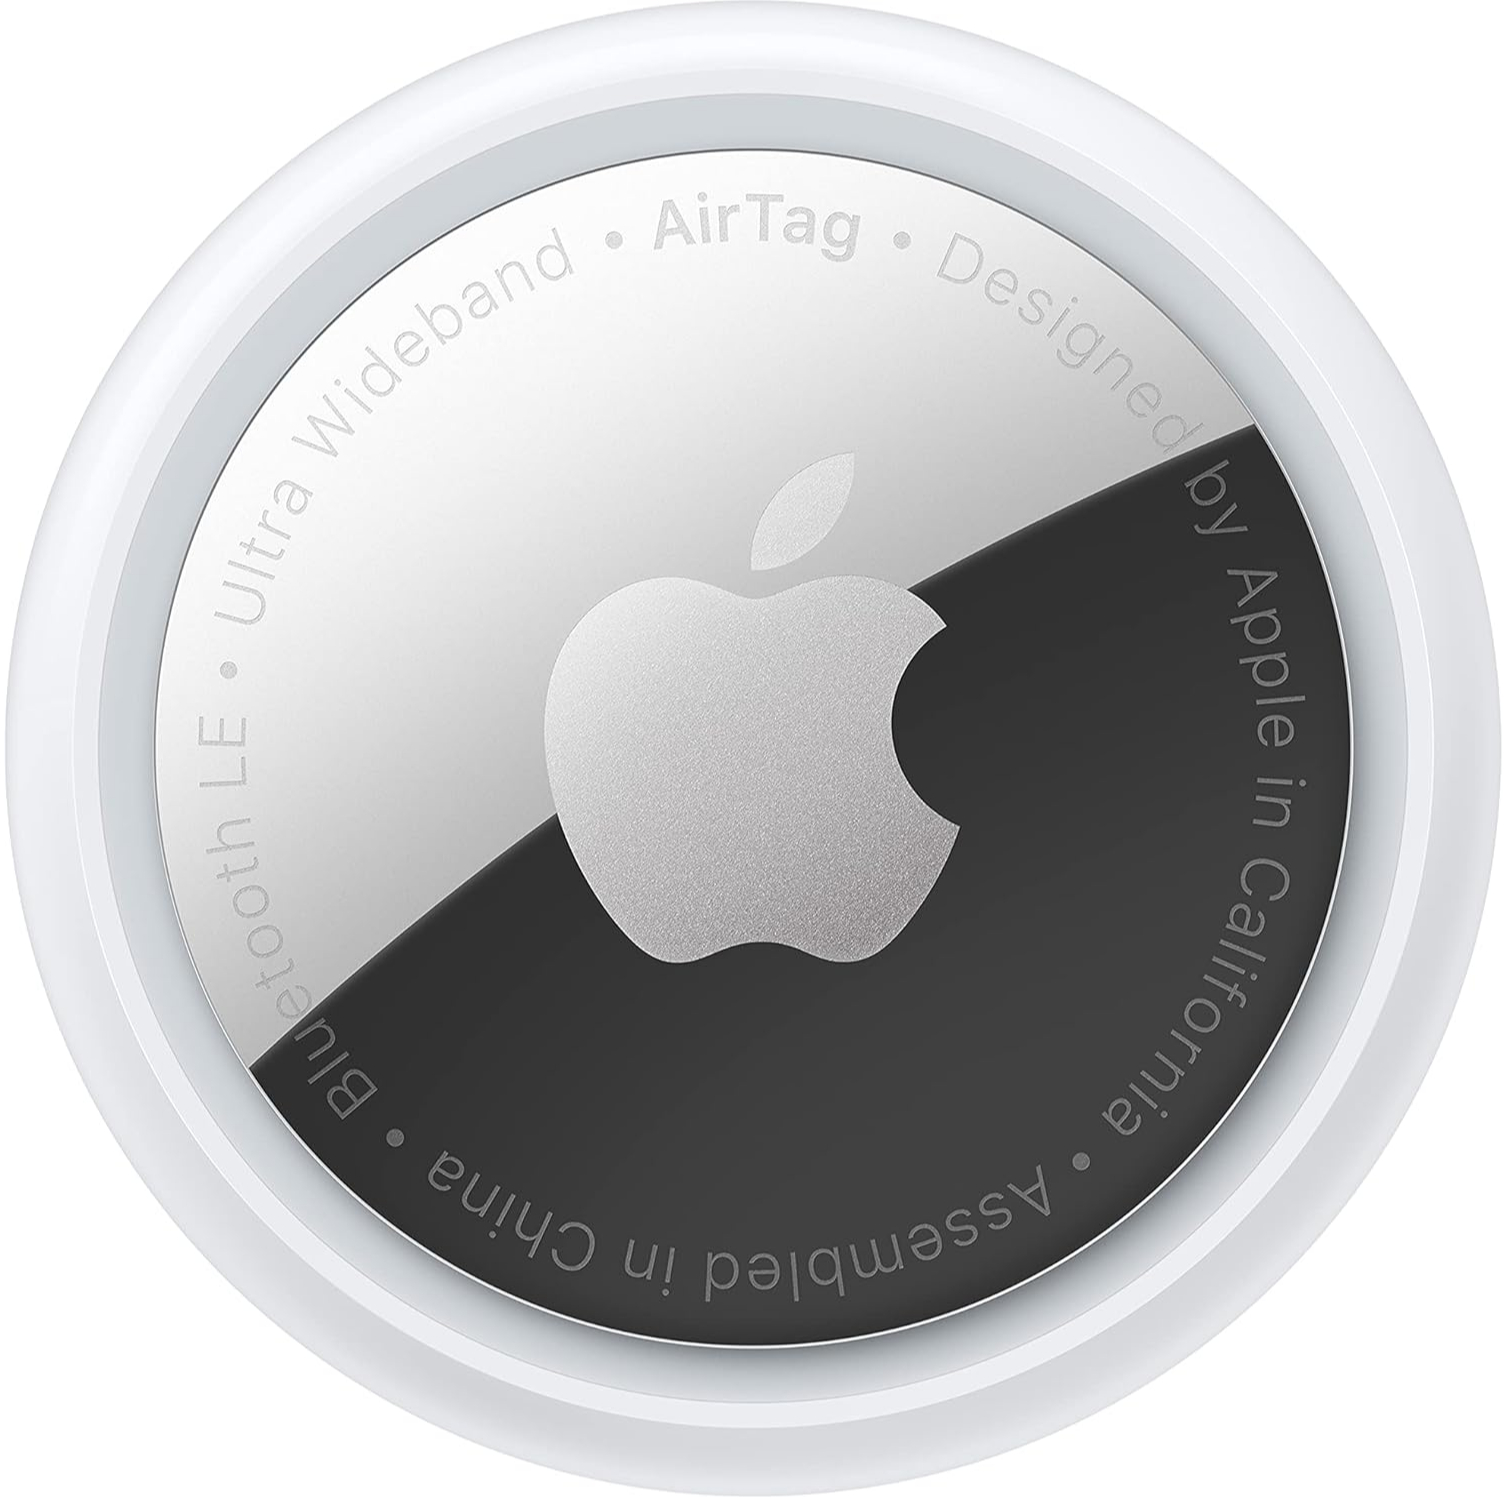 صاحب آیفون هستید؟  معاملات عالی Apple AirTag آمازون هنوز زنده هستند (و به سرعت فروخته می شوند!)